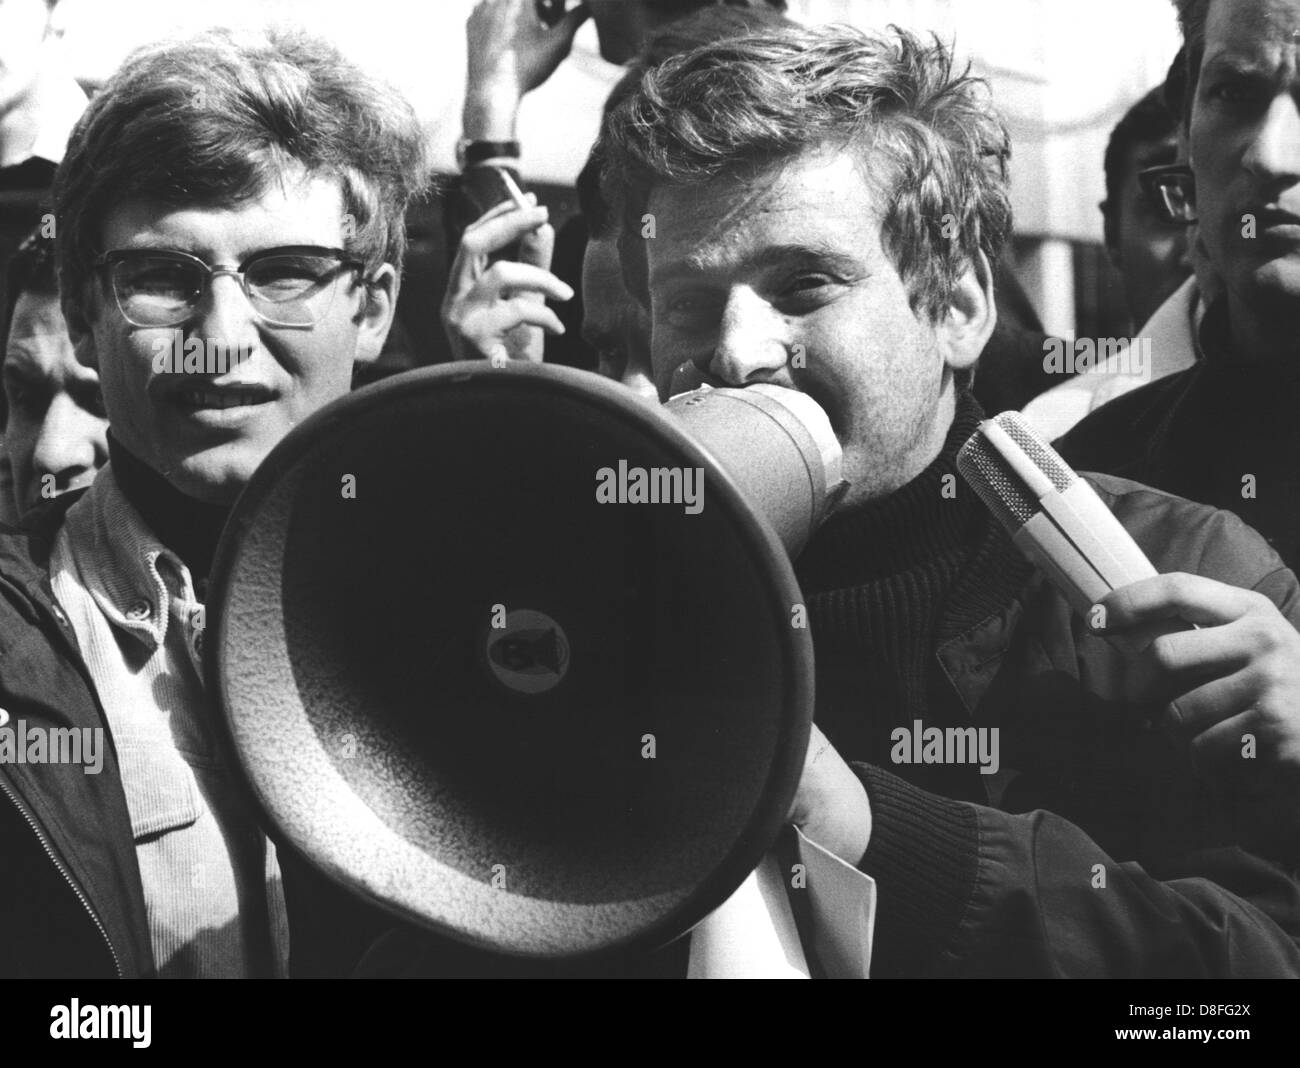 Studentenführer Daniel Cohn-Bendit (r) sprechen Karl Dietrich Wolff (l) und an die Studenten der Universität Frankfurt am Main am 24. Mai 1968 während des Streiks gegen den Staat Notfall Verfassung. Stockfoto